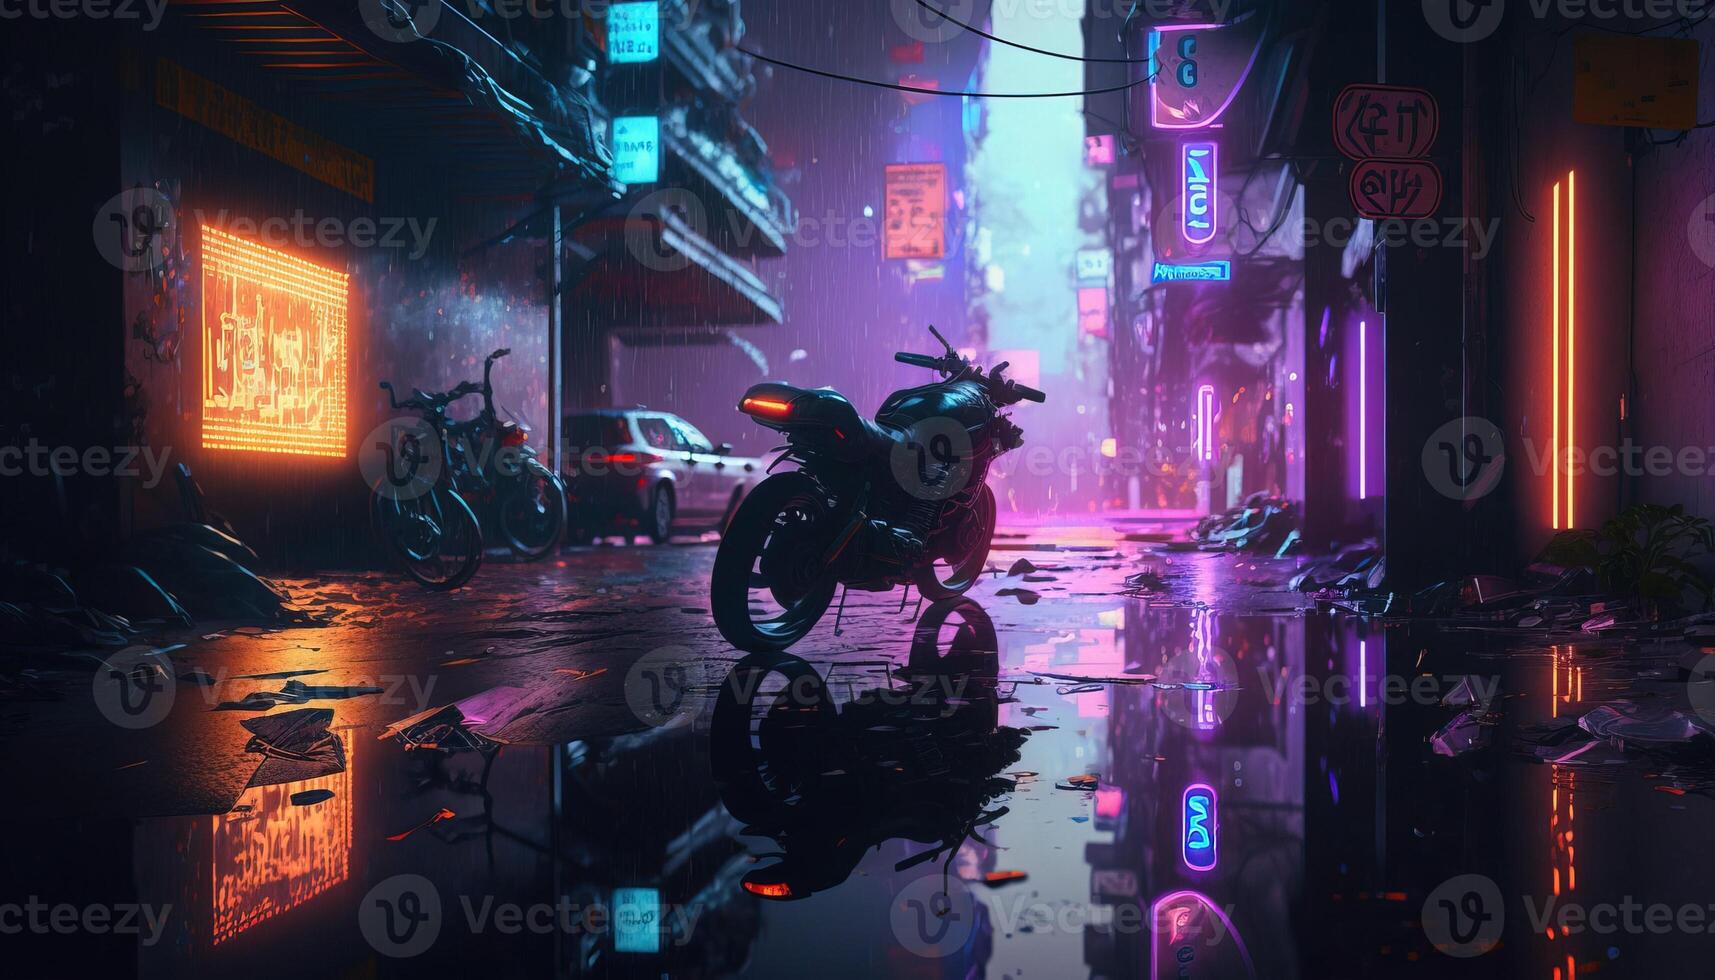 generativ ai, natt scen av efter regn stad i cyberpunk stil med motorcykel, trogen nostalgisk 80-tal, 90-tal. neon lampor vibrerande färger, fotorealistisk horisontell illustration. foto